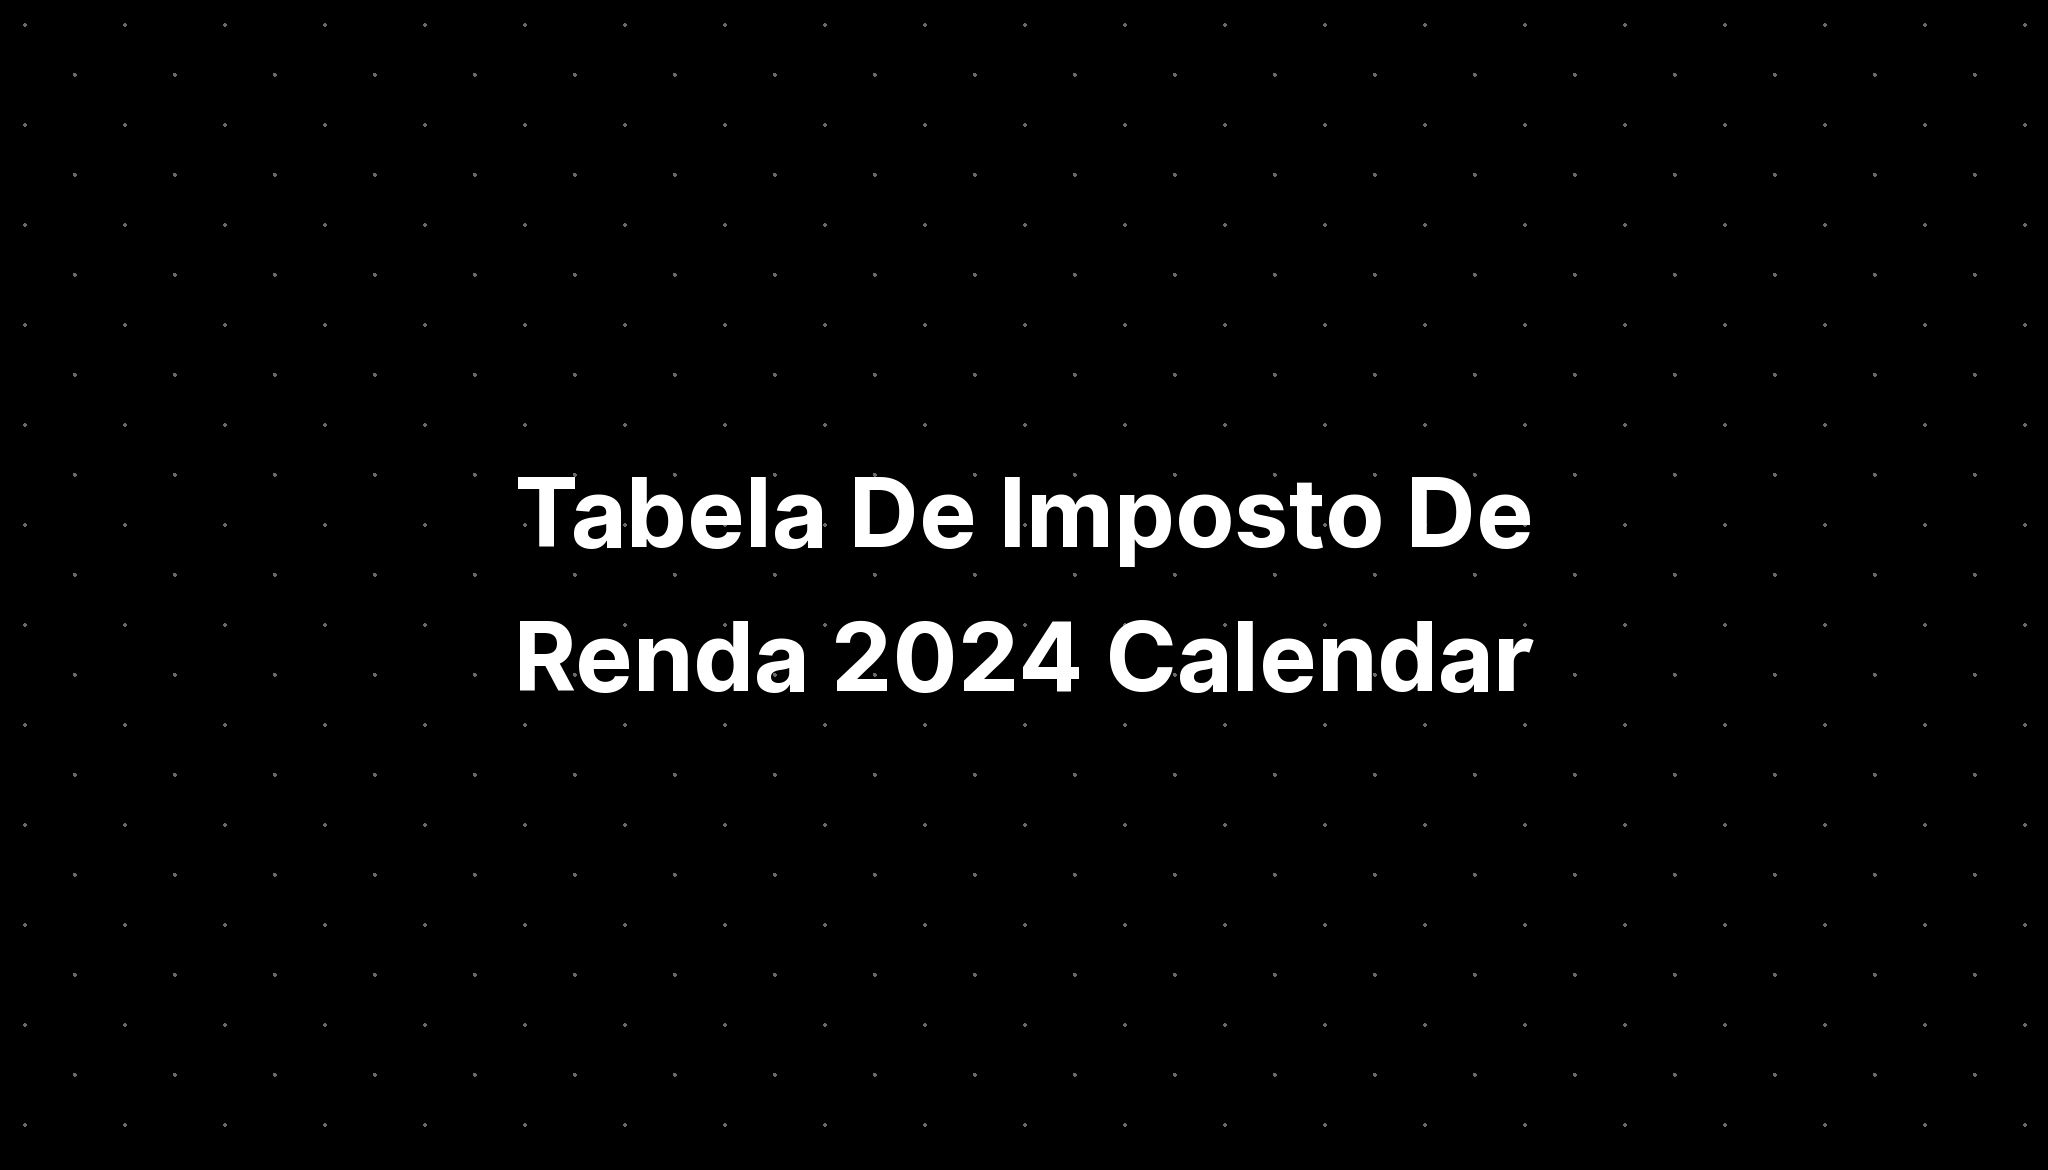 Tabela De Imposto De Renda 2024 Calendar IMAGESEE